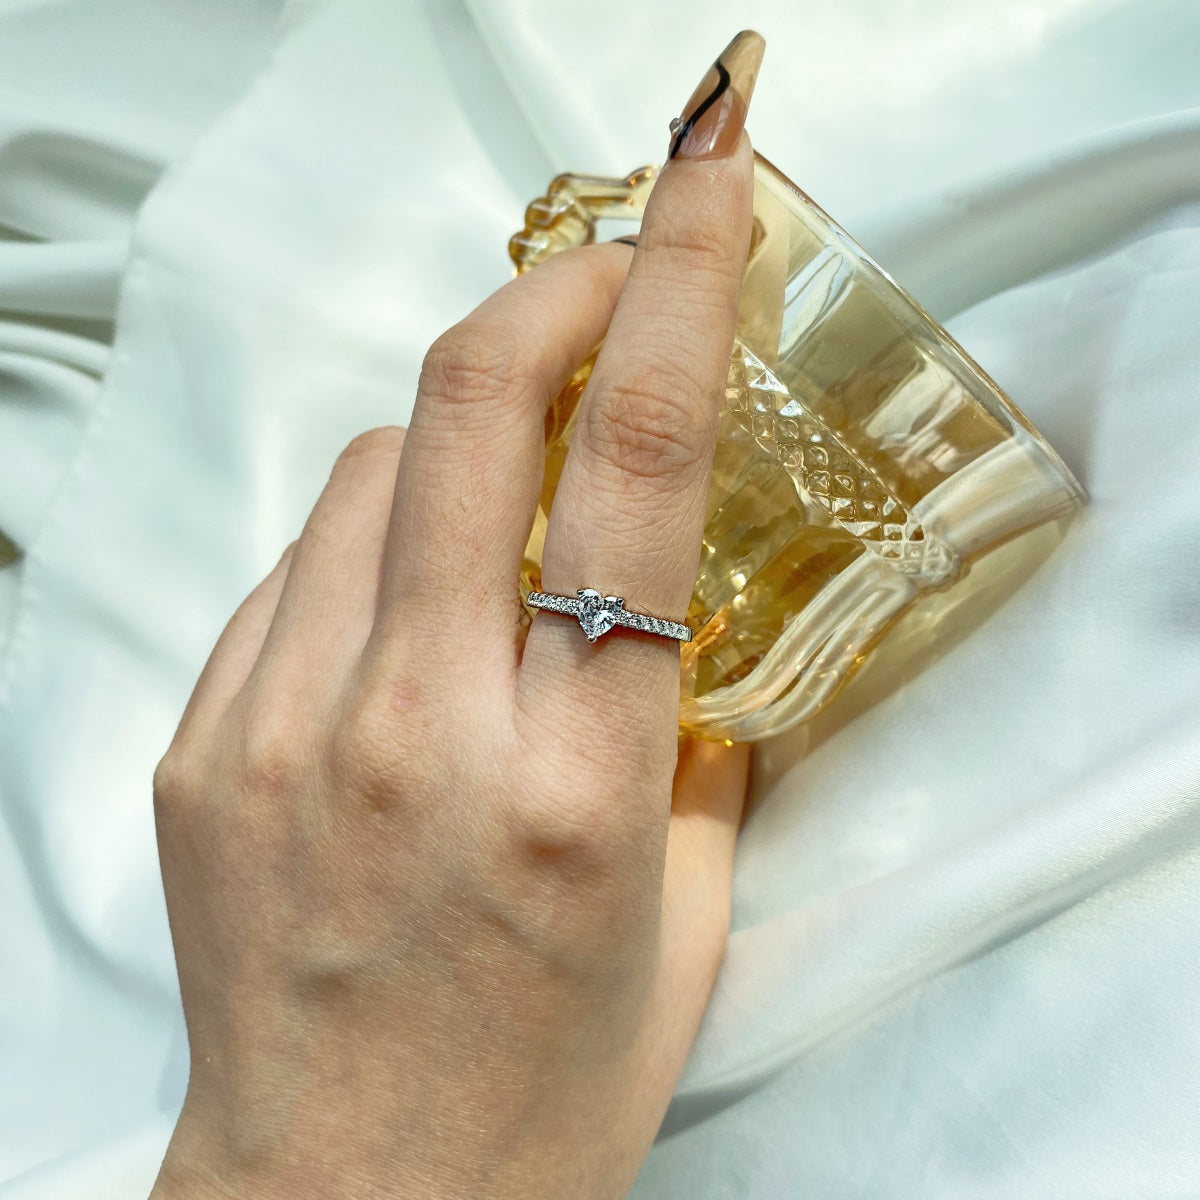 Einzigartiges Geschenk für Frauen kreative Verlobungsring mit Diamanten - Arabisco